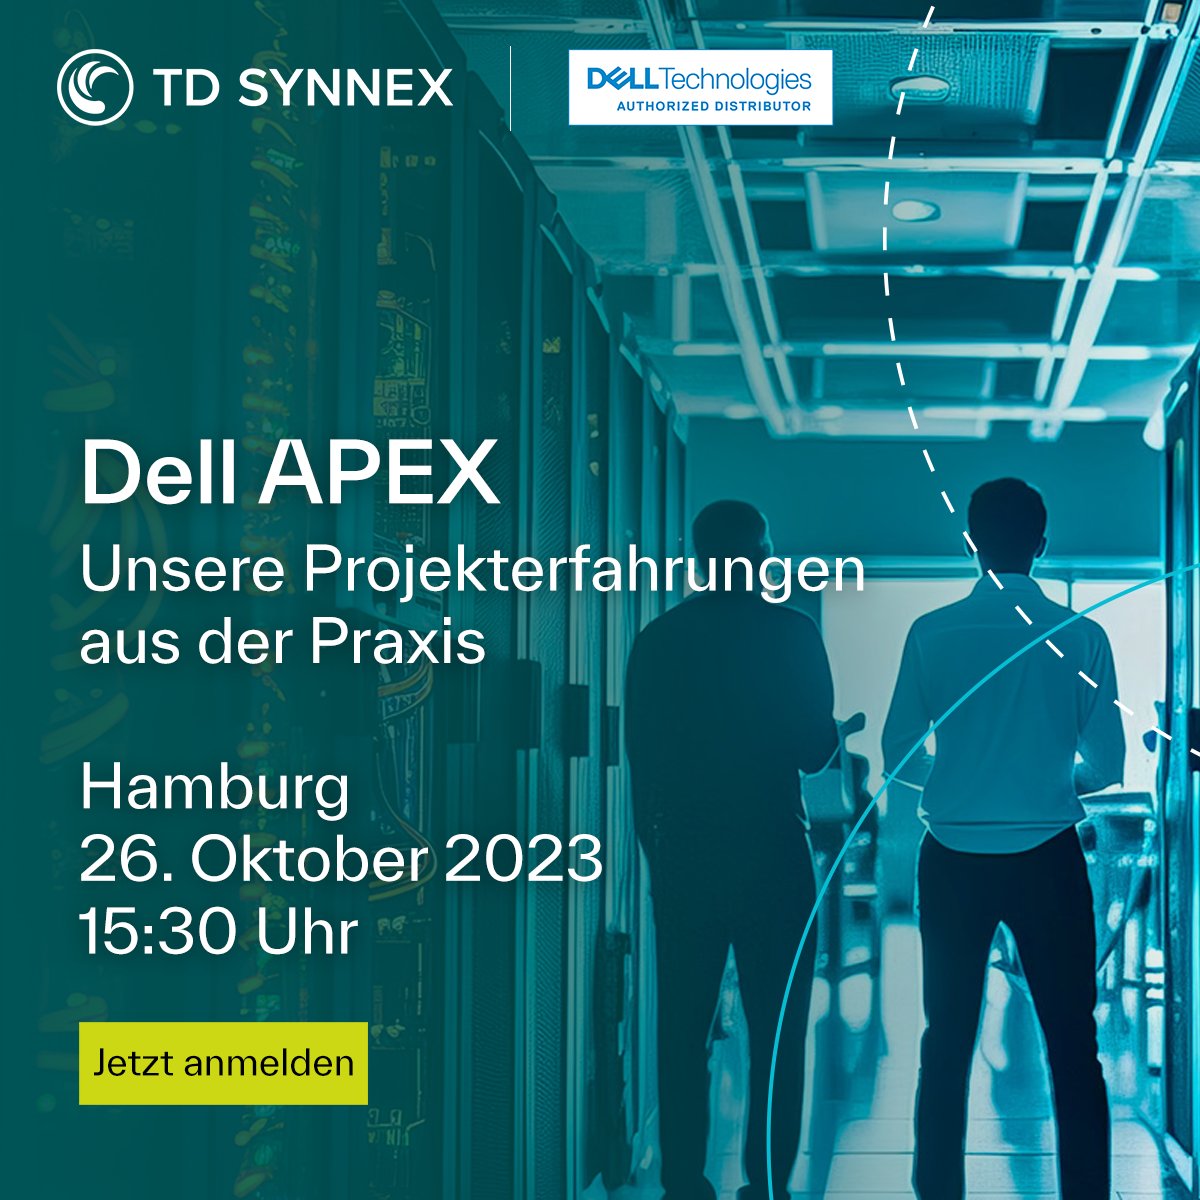 TD SYNNEX Germany ist der erste Distributor 🚀, der mit @Dell Technologies den APEX-Vertrag in Deutschland unterzeichnet 👍 und bereits Projekte umgesetzt hat ✅. Wir teilen unsere Erfahrung aus den Projekten und beantworten Ihre Fragen 🔝. ms.spr.ly/60129ZUZn